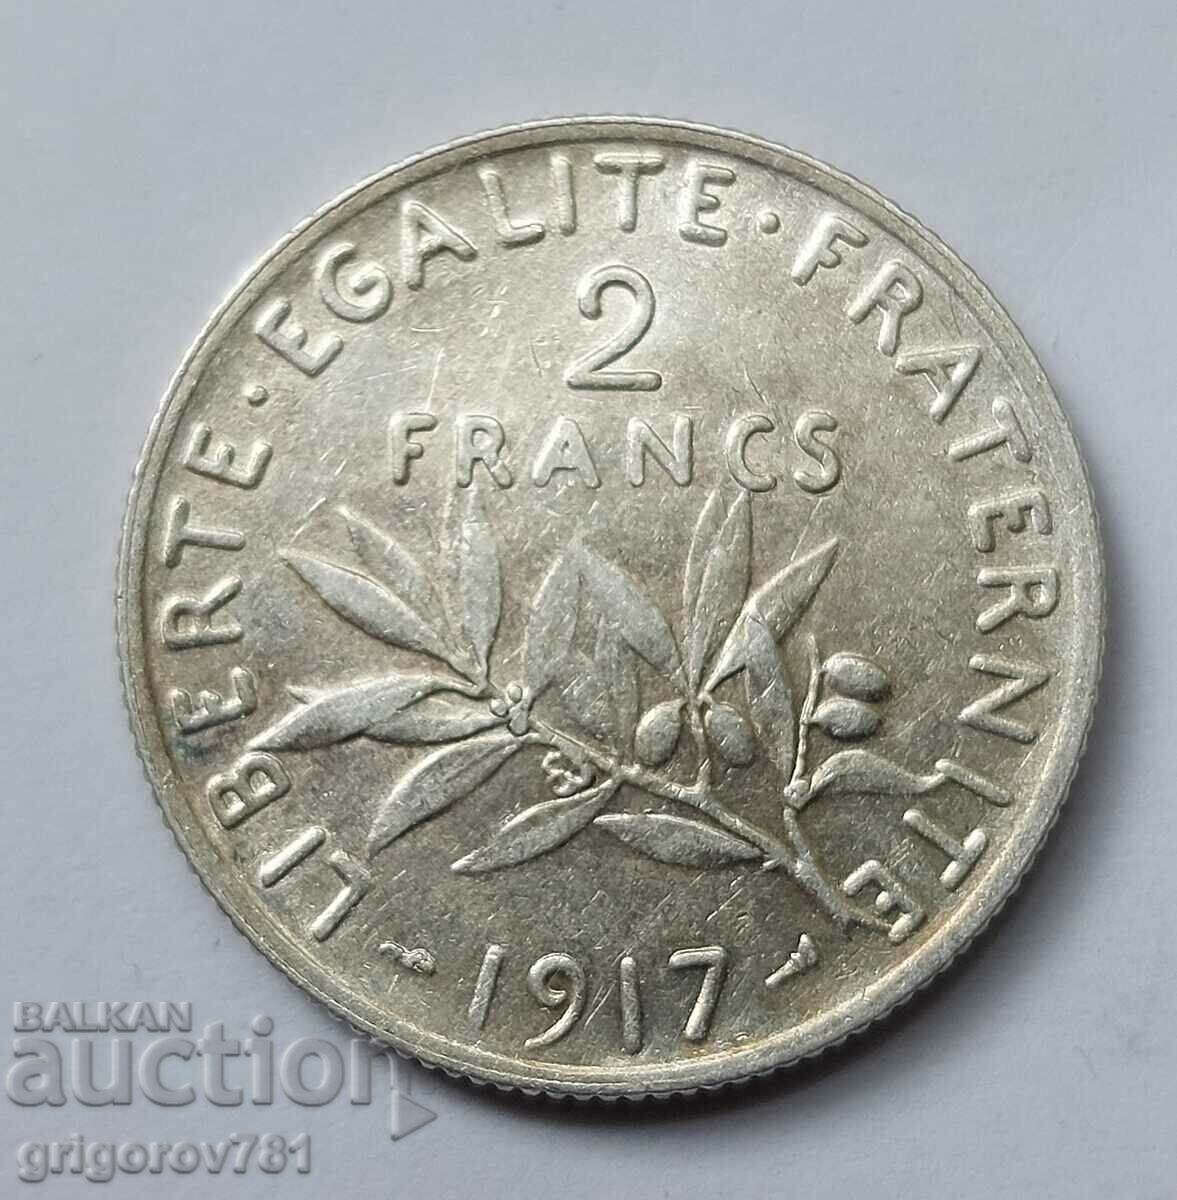 2 Franci Argint Franta 1917 - Moneda de argint #105